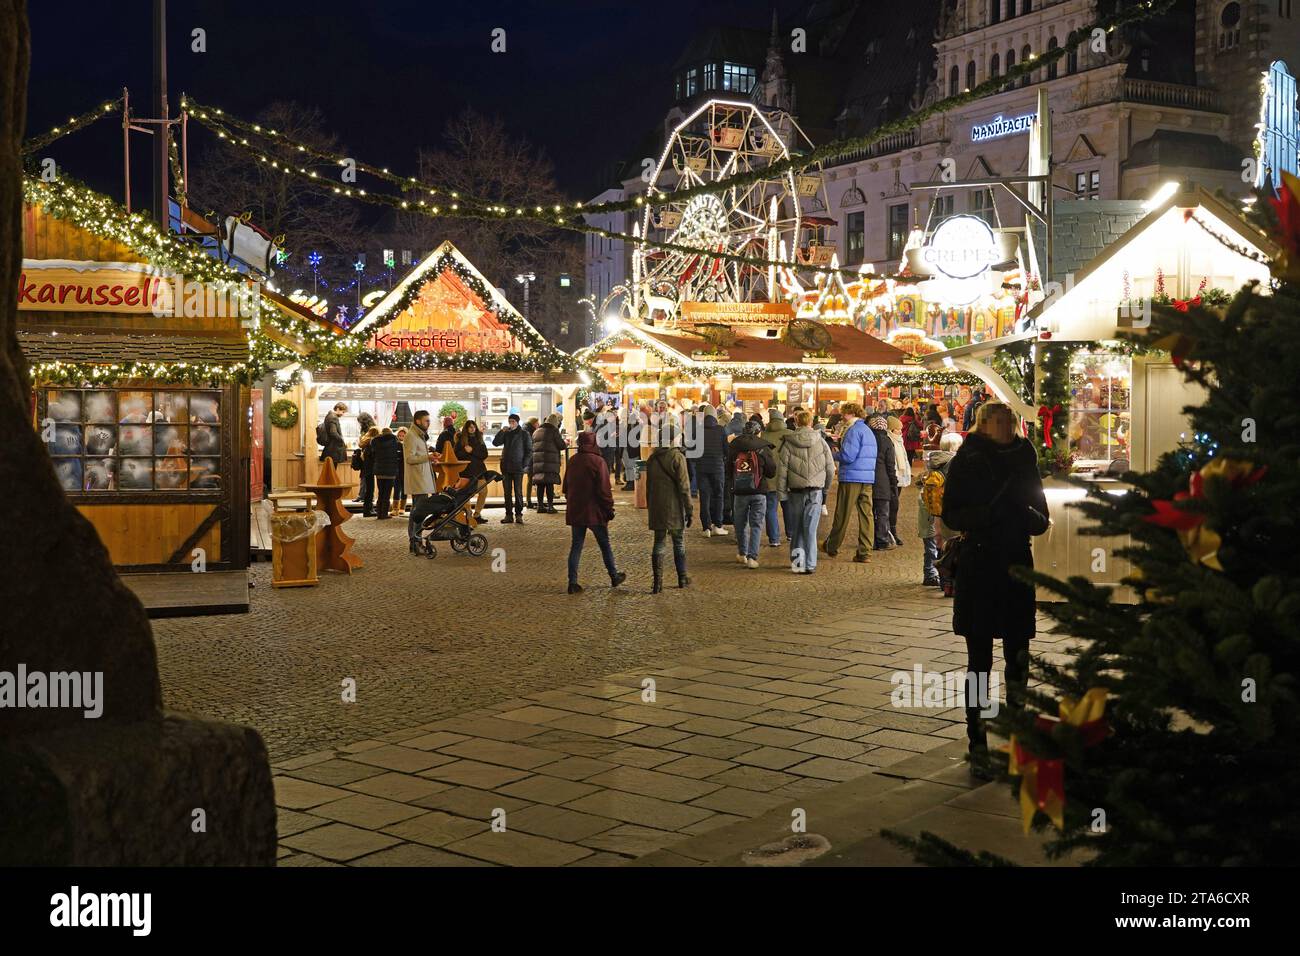 Der Bremer Weihnachtsmarkt steht nicht nur auf dem Bremer Marktplatz, sondern auch auf dem benachbarten Domshof Foto. *** Der Bremer Weihnachtsmarkt befindet sich nicht nur auf dem Bremenner Markt, sondern auch auf dem benachbarten Domshof Photo Stockfoto